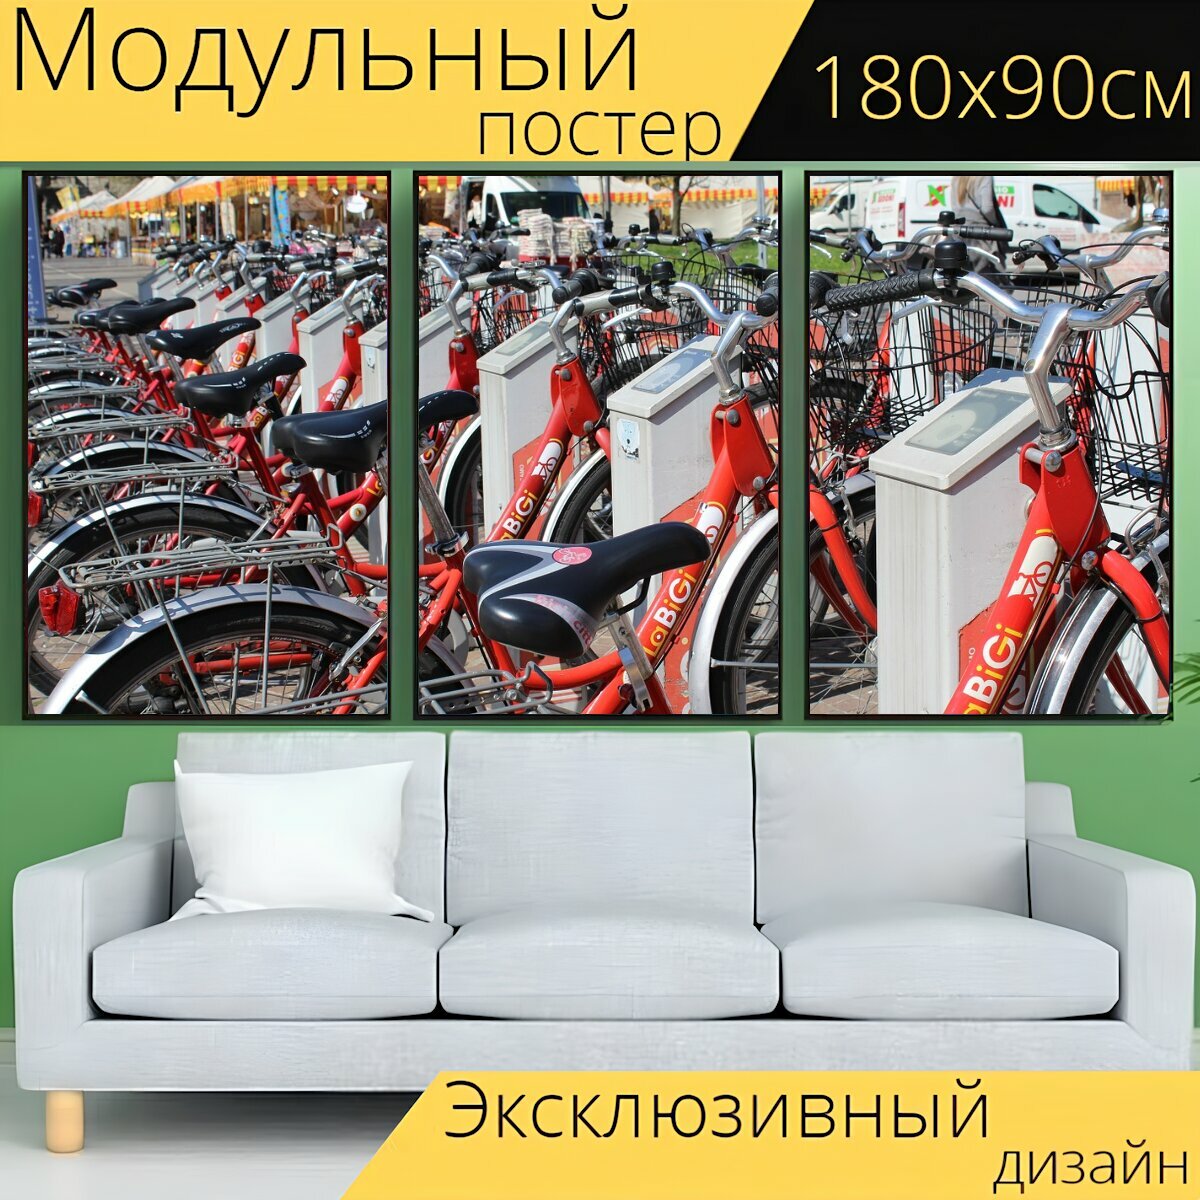 Модульный постер "Велосипеды, прокат велосипедов, транспорт" 180 x 90 см. для интерьера